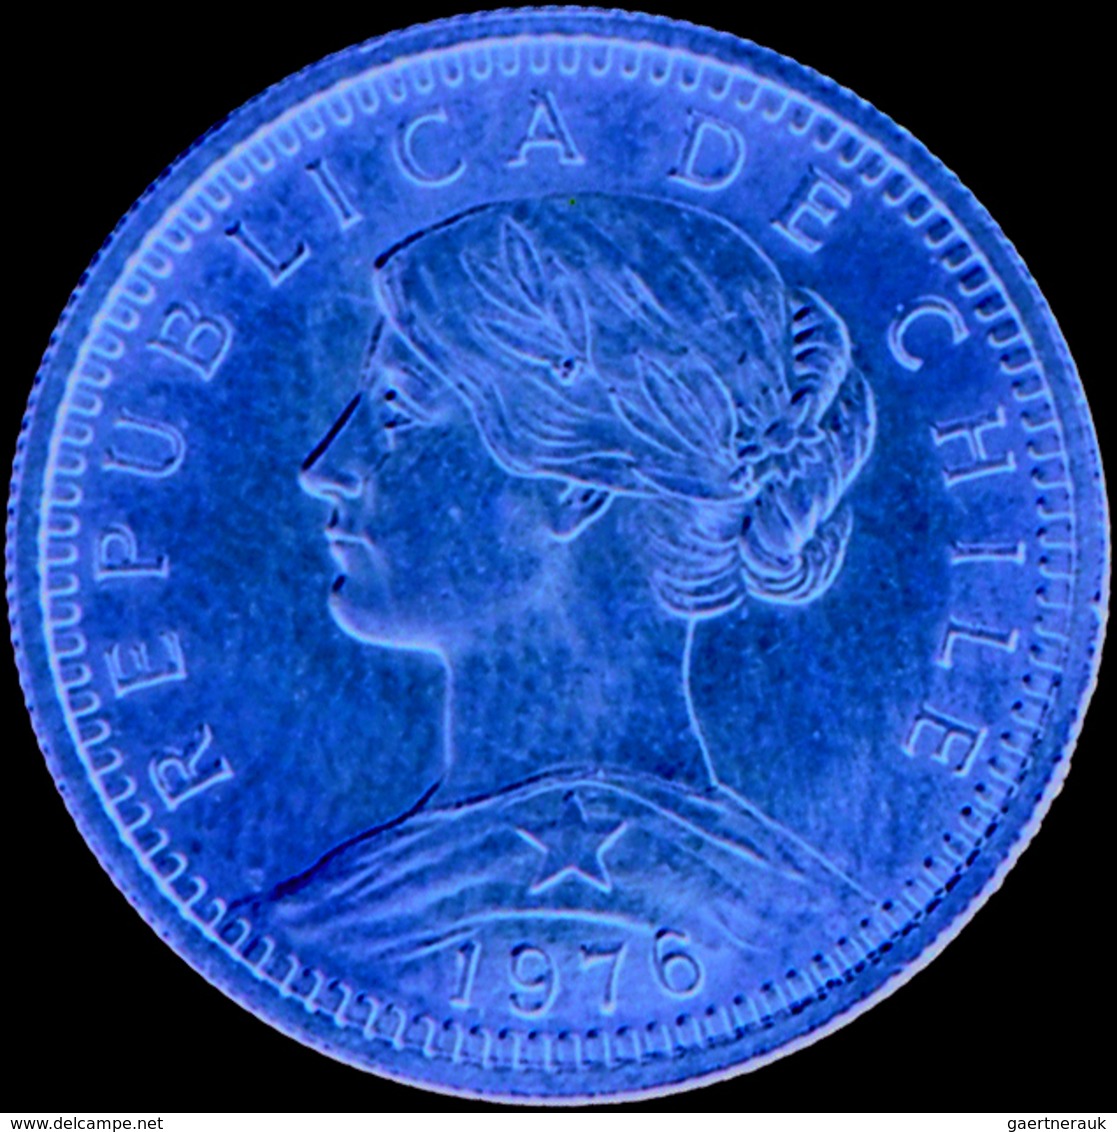 Chile - Anlagegold: 20 Pesos / 2 Condores 1976, KM # 168, Friedberg 56, 4,07g, 900/1000. Vorzüglich. - Chile